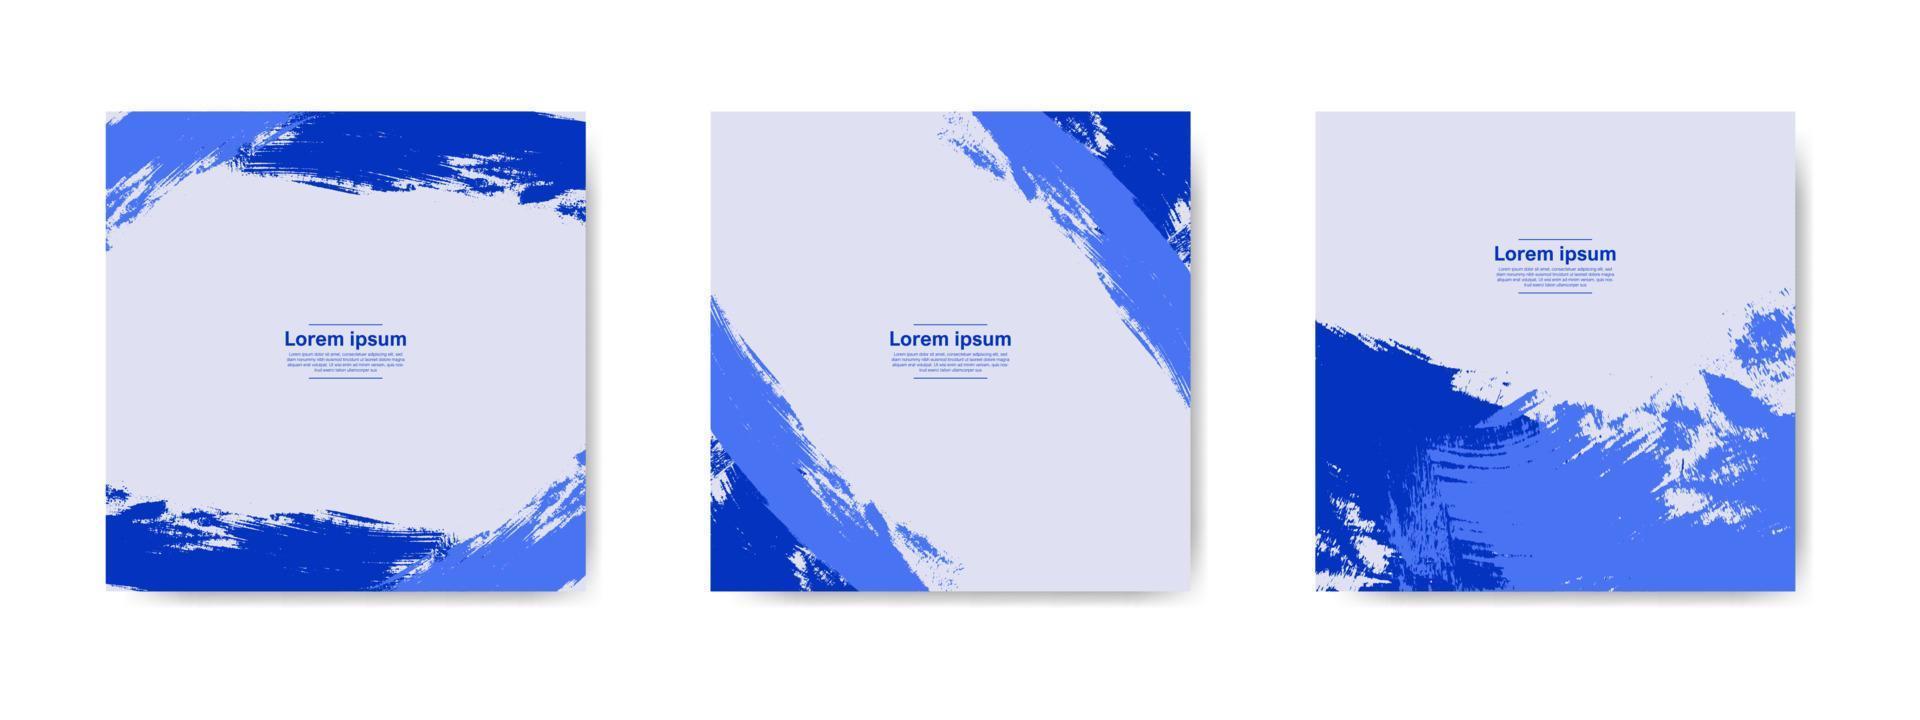 collection de bannières grunge abstraites bleues pour les publications et les histoires sur les réseaux sociaux vecteur